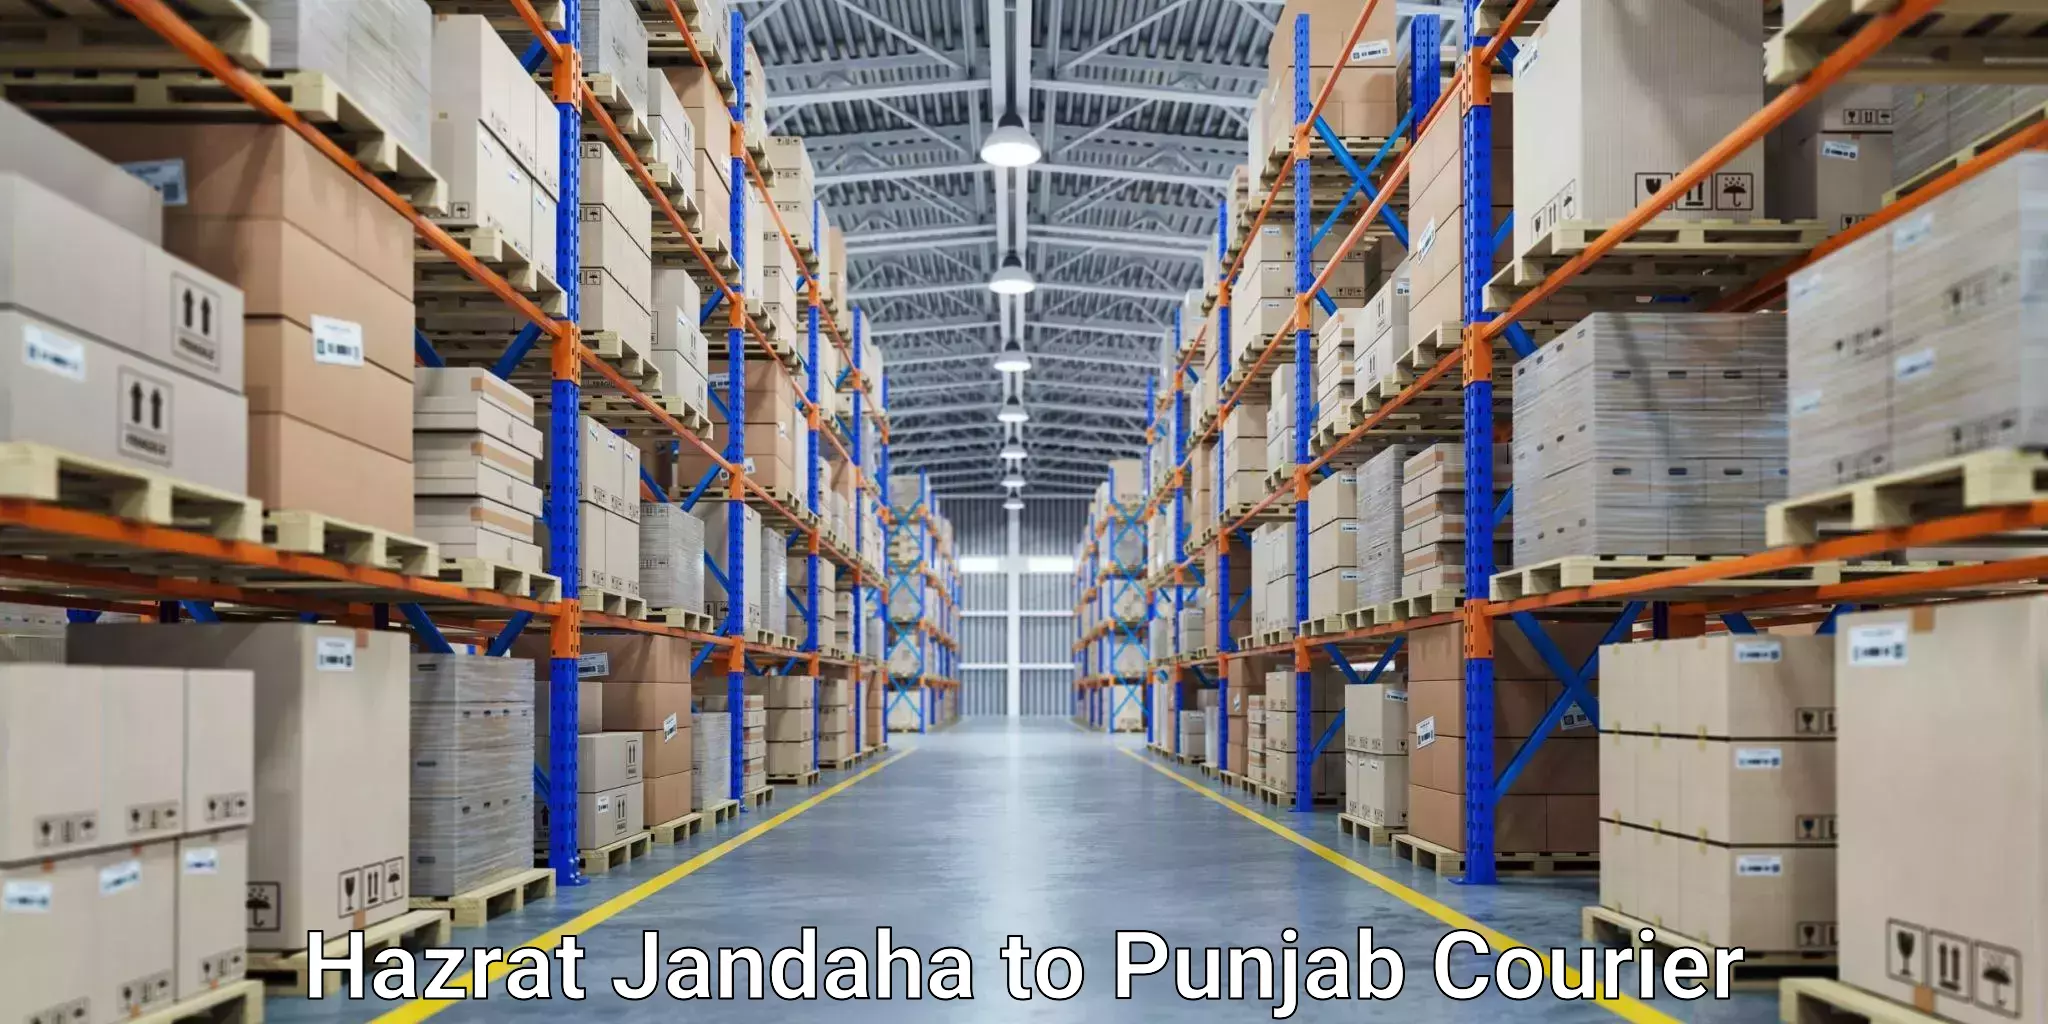 Express delivery capabilities Hazrat Jandaha to Ajnala